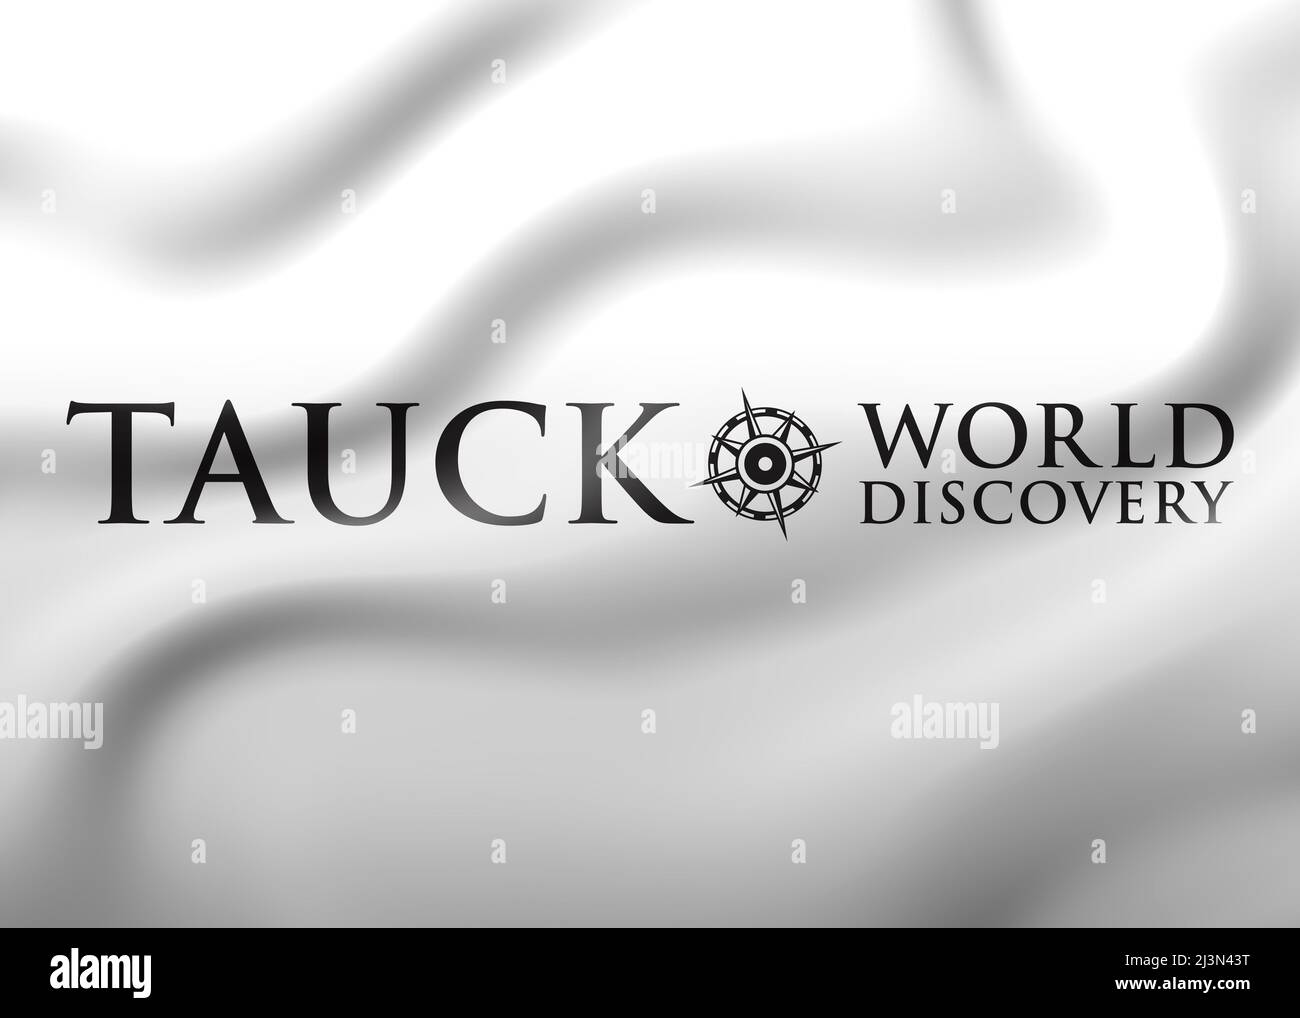 Tauck logo Stock Photo